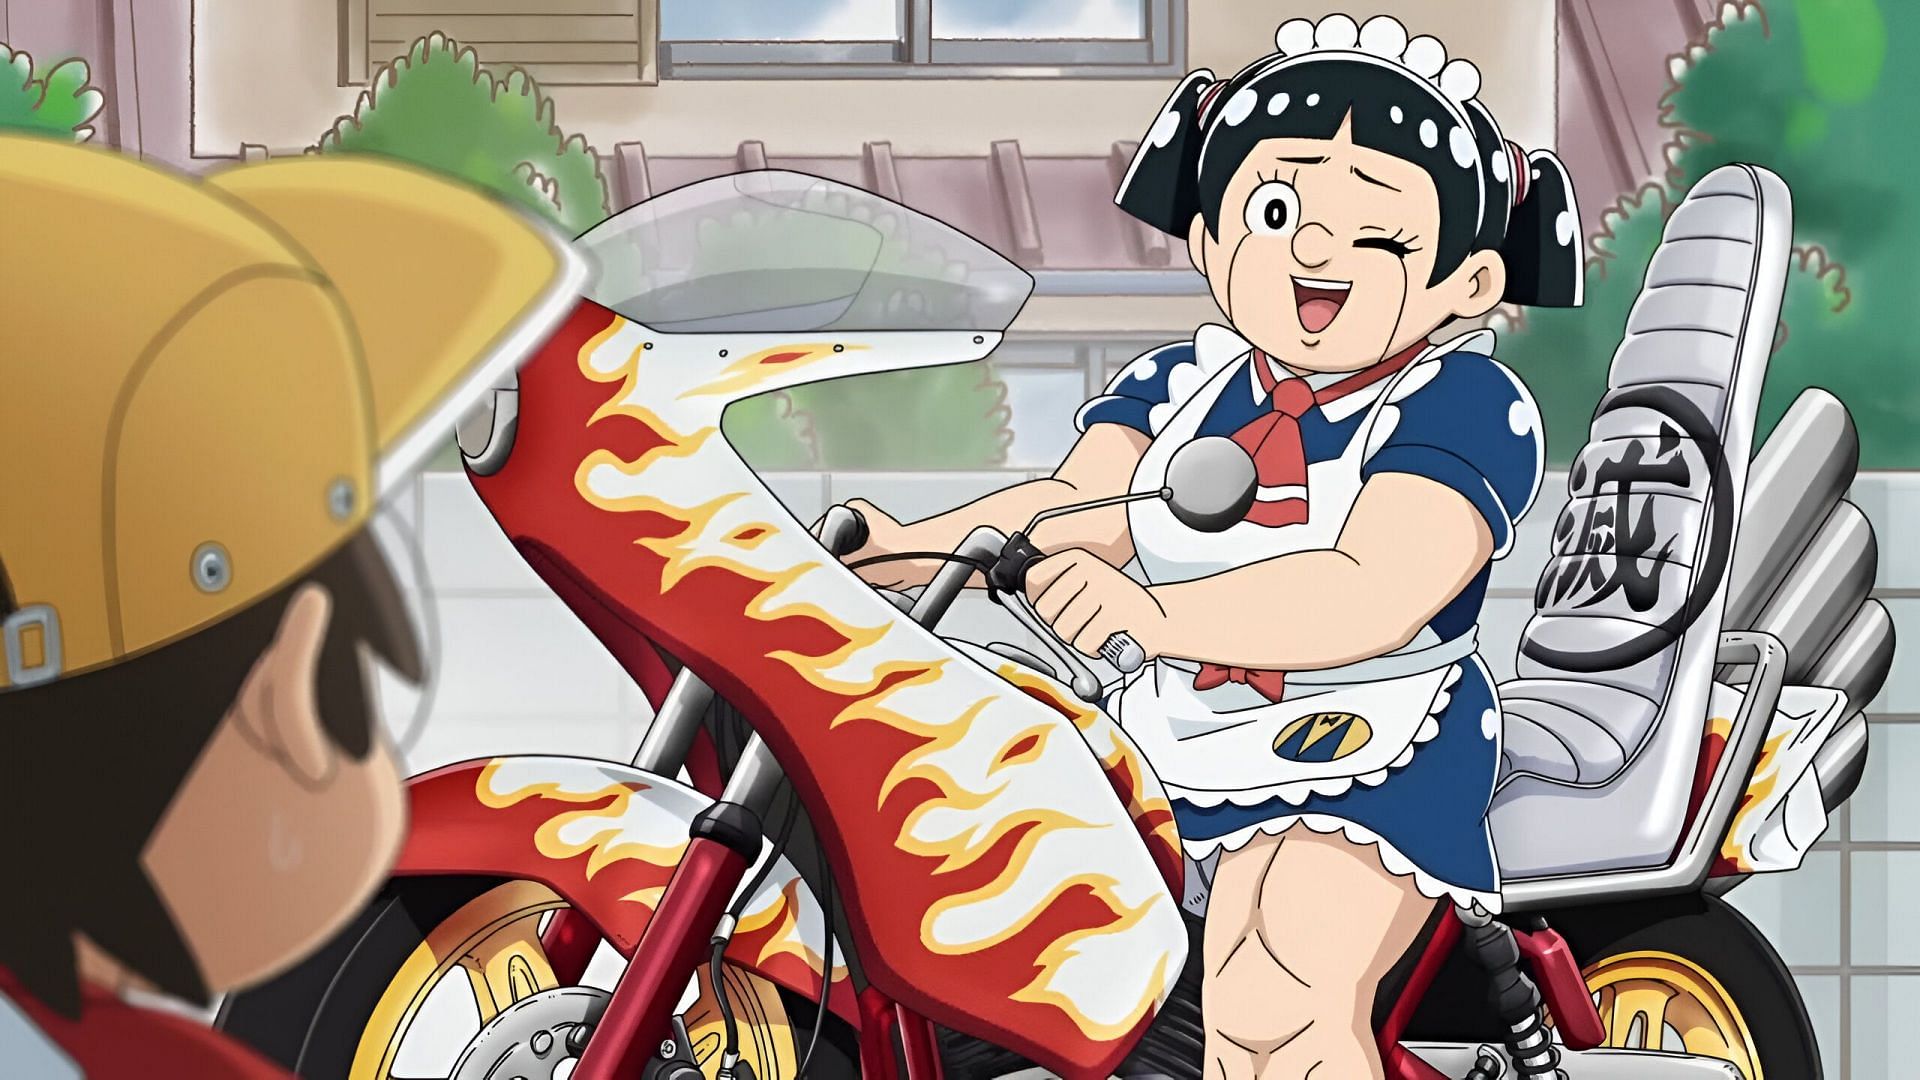 Roboko as seen in the anime (Image via Gallop)